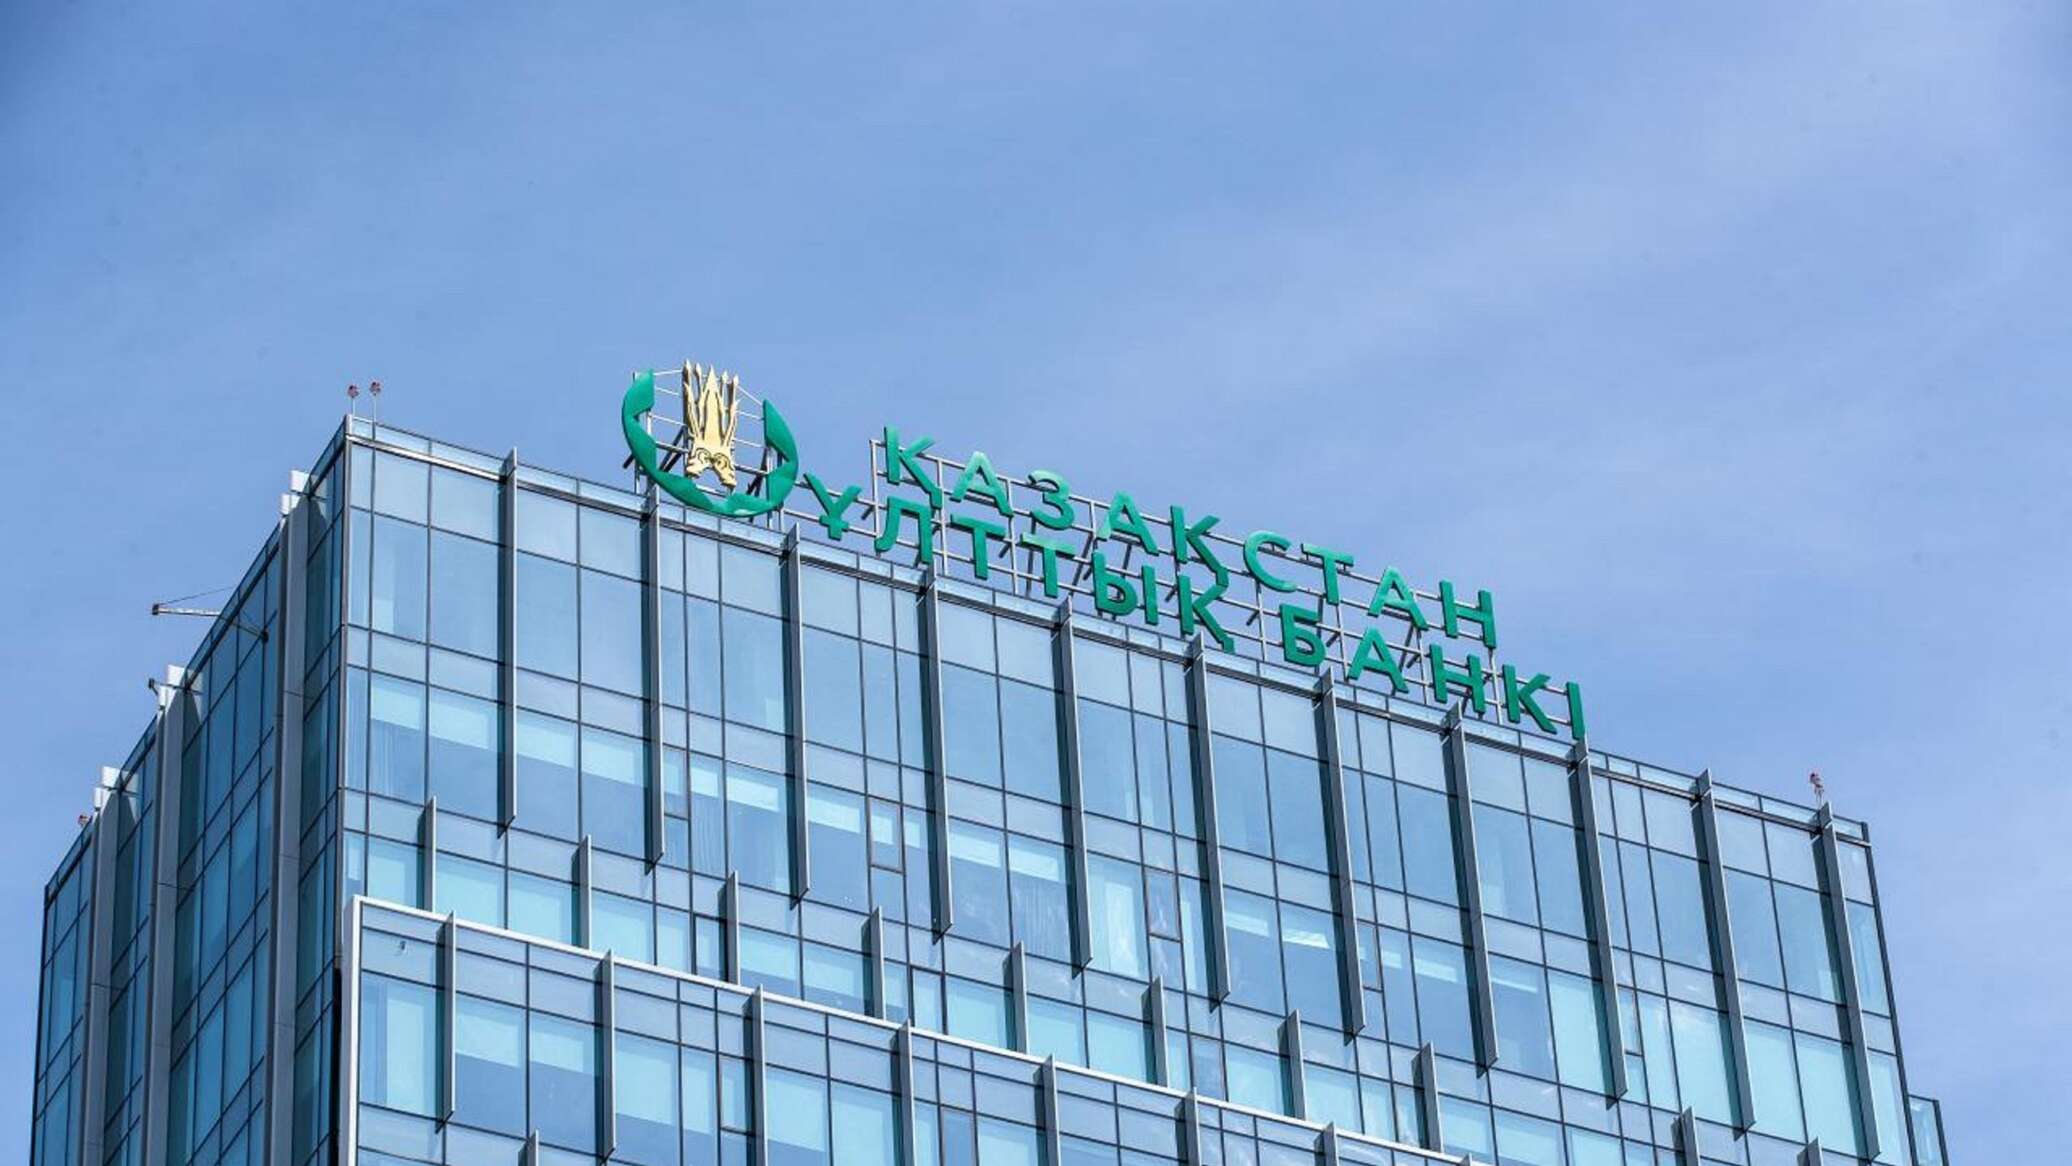 Быстрые заработки на инвестициях обещают мошенники, предупреждает Нацбанк Казахстана